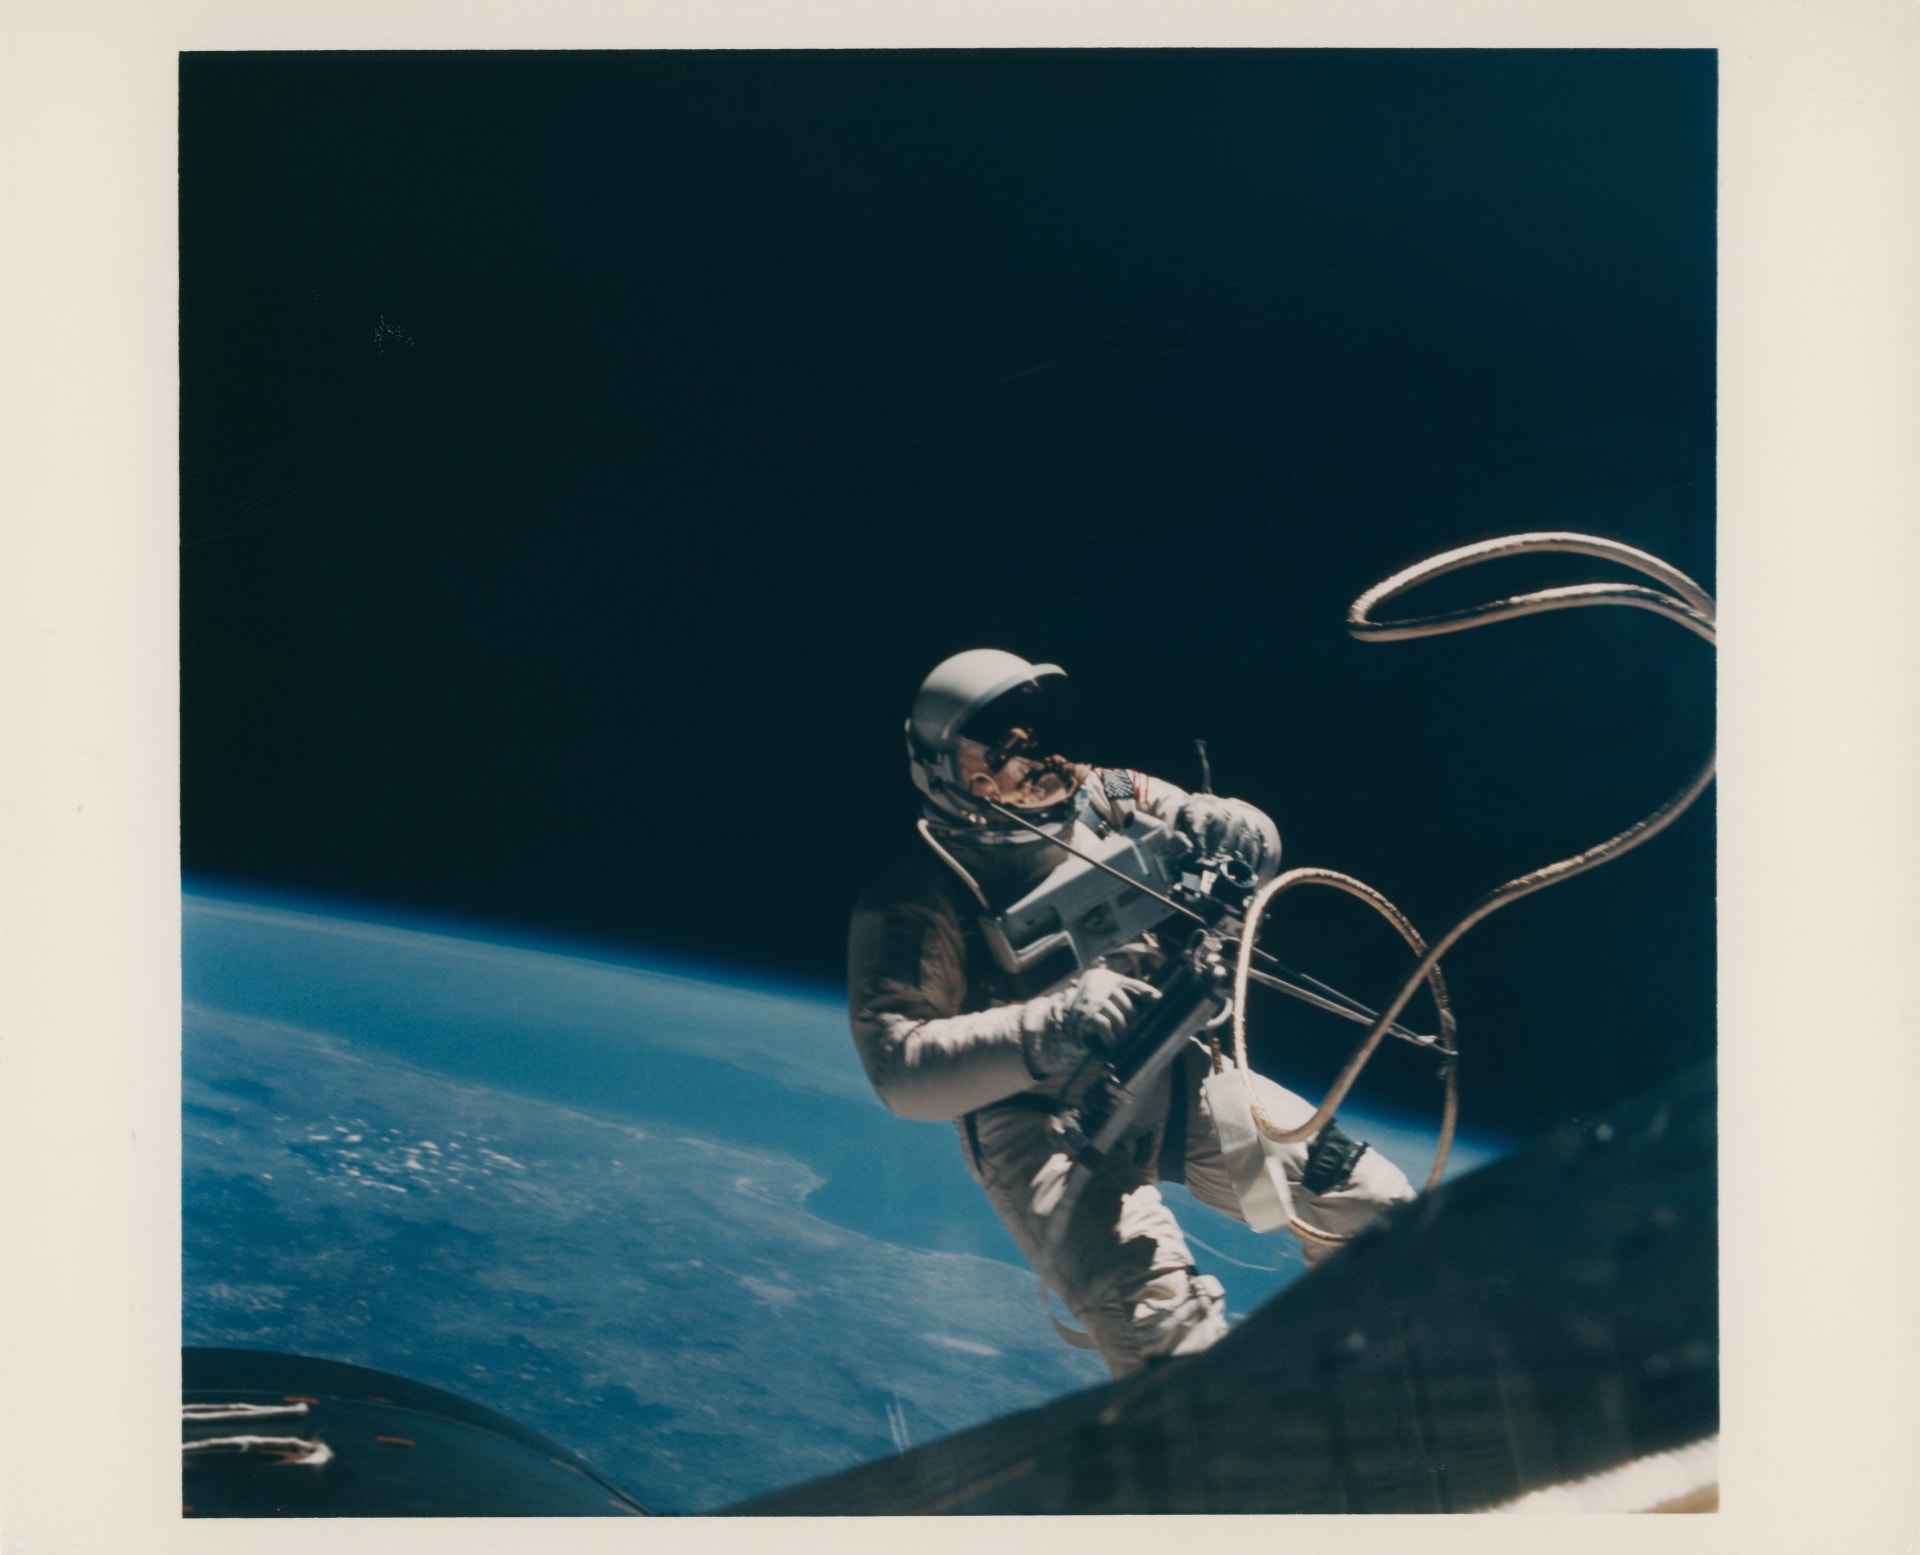 منها أول صورة "سيلفي" في الفضاء.. طرح صور نادرة من مهمات فضاء تاريخية للبيع في المزاد